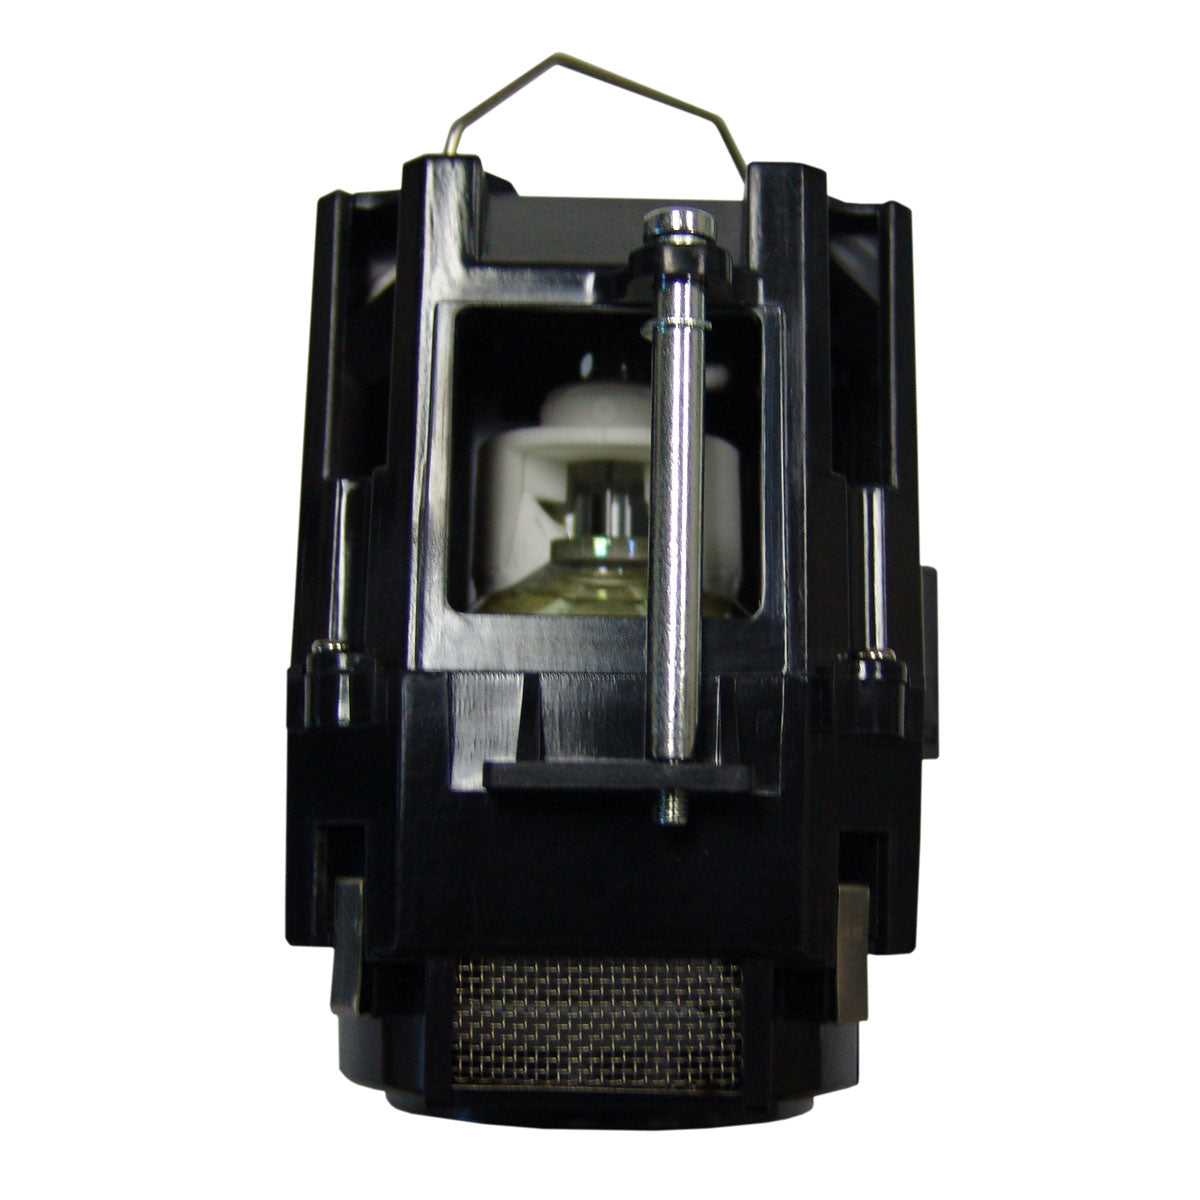 Dukane 456-239 Ushio Projector Lamp Module